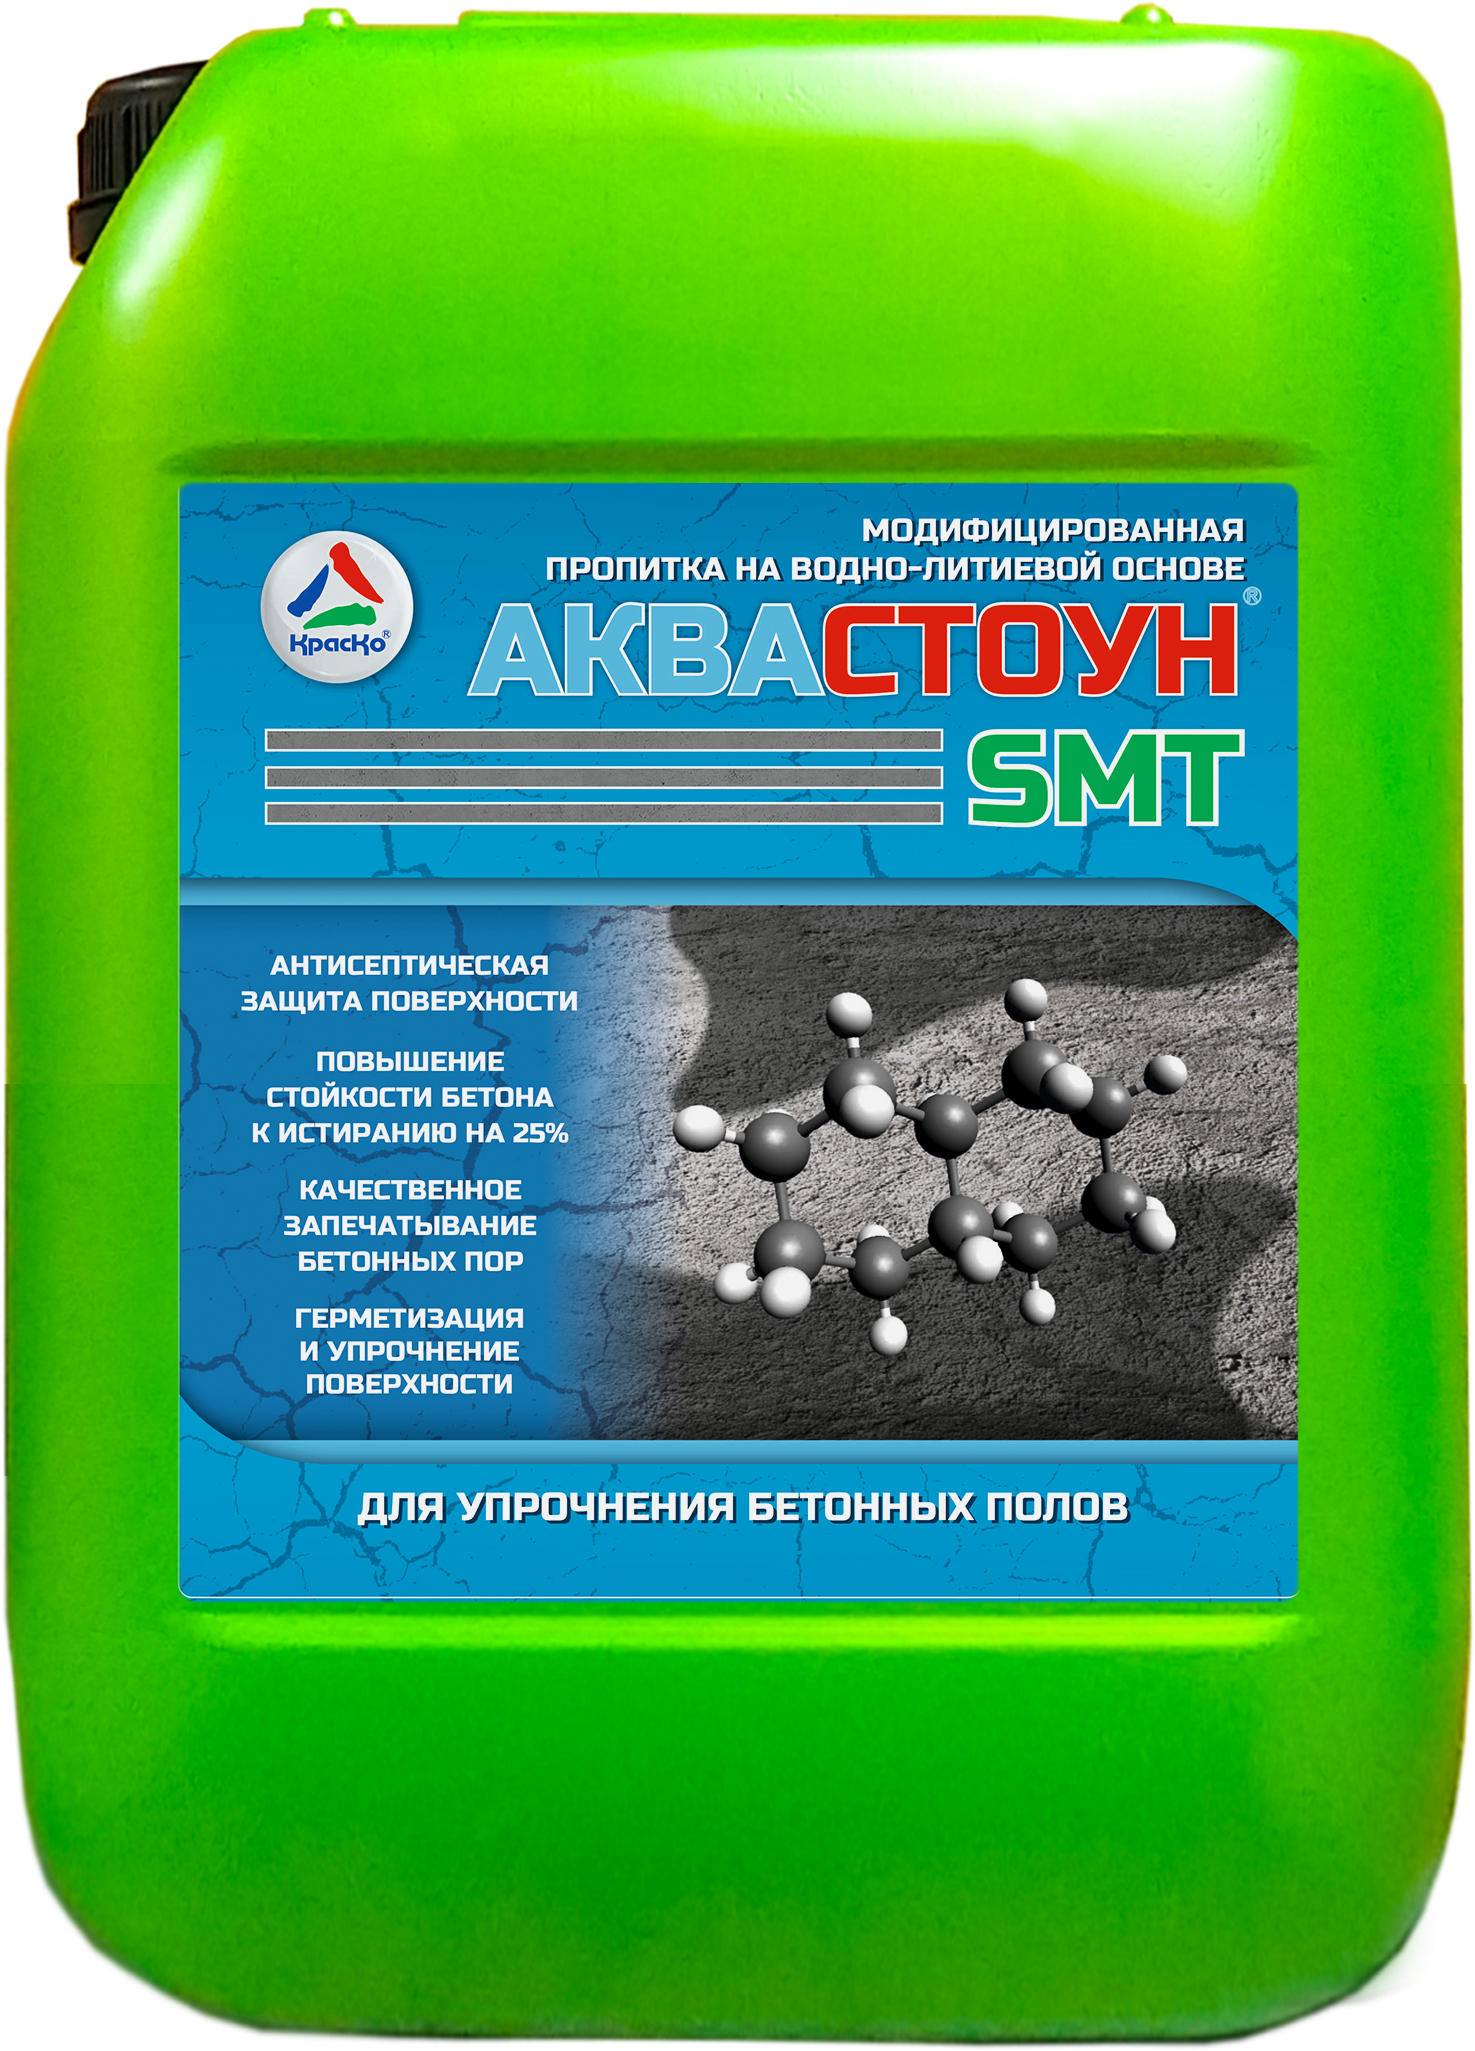 Аквастоун SMT — модифицированная пропитка на водно-литиевой основе для упрочнения бетонных полов